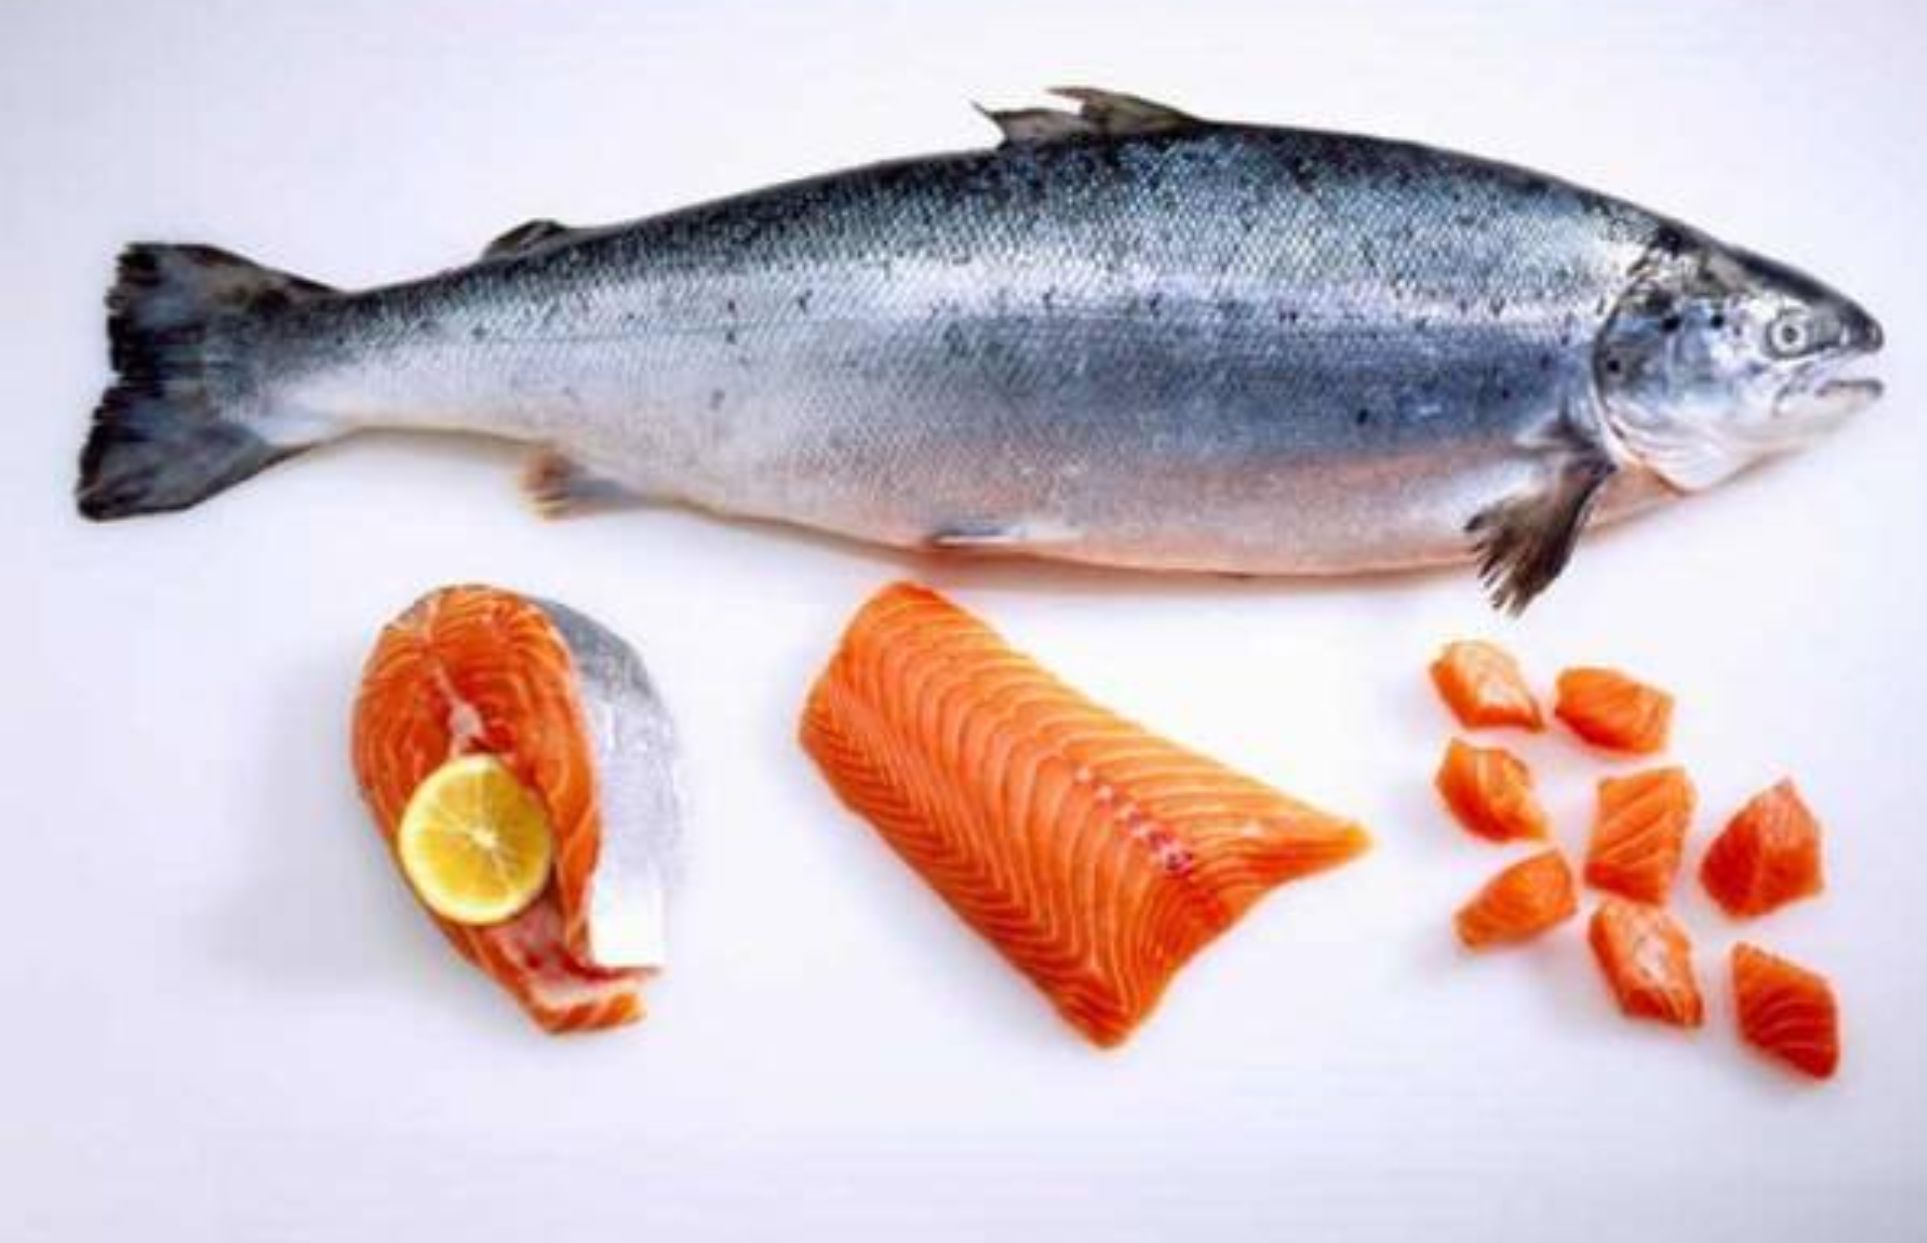 Ikan salmon merupakan salah satu sumber protein berkualitas tinggi yang kaya akan nutrisi penting bagi kesehatan. Berikut adalah beberapa kandungan gizi yang luar biasa yang terdapat dalam ikan salmon